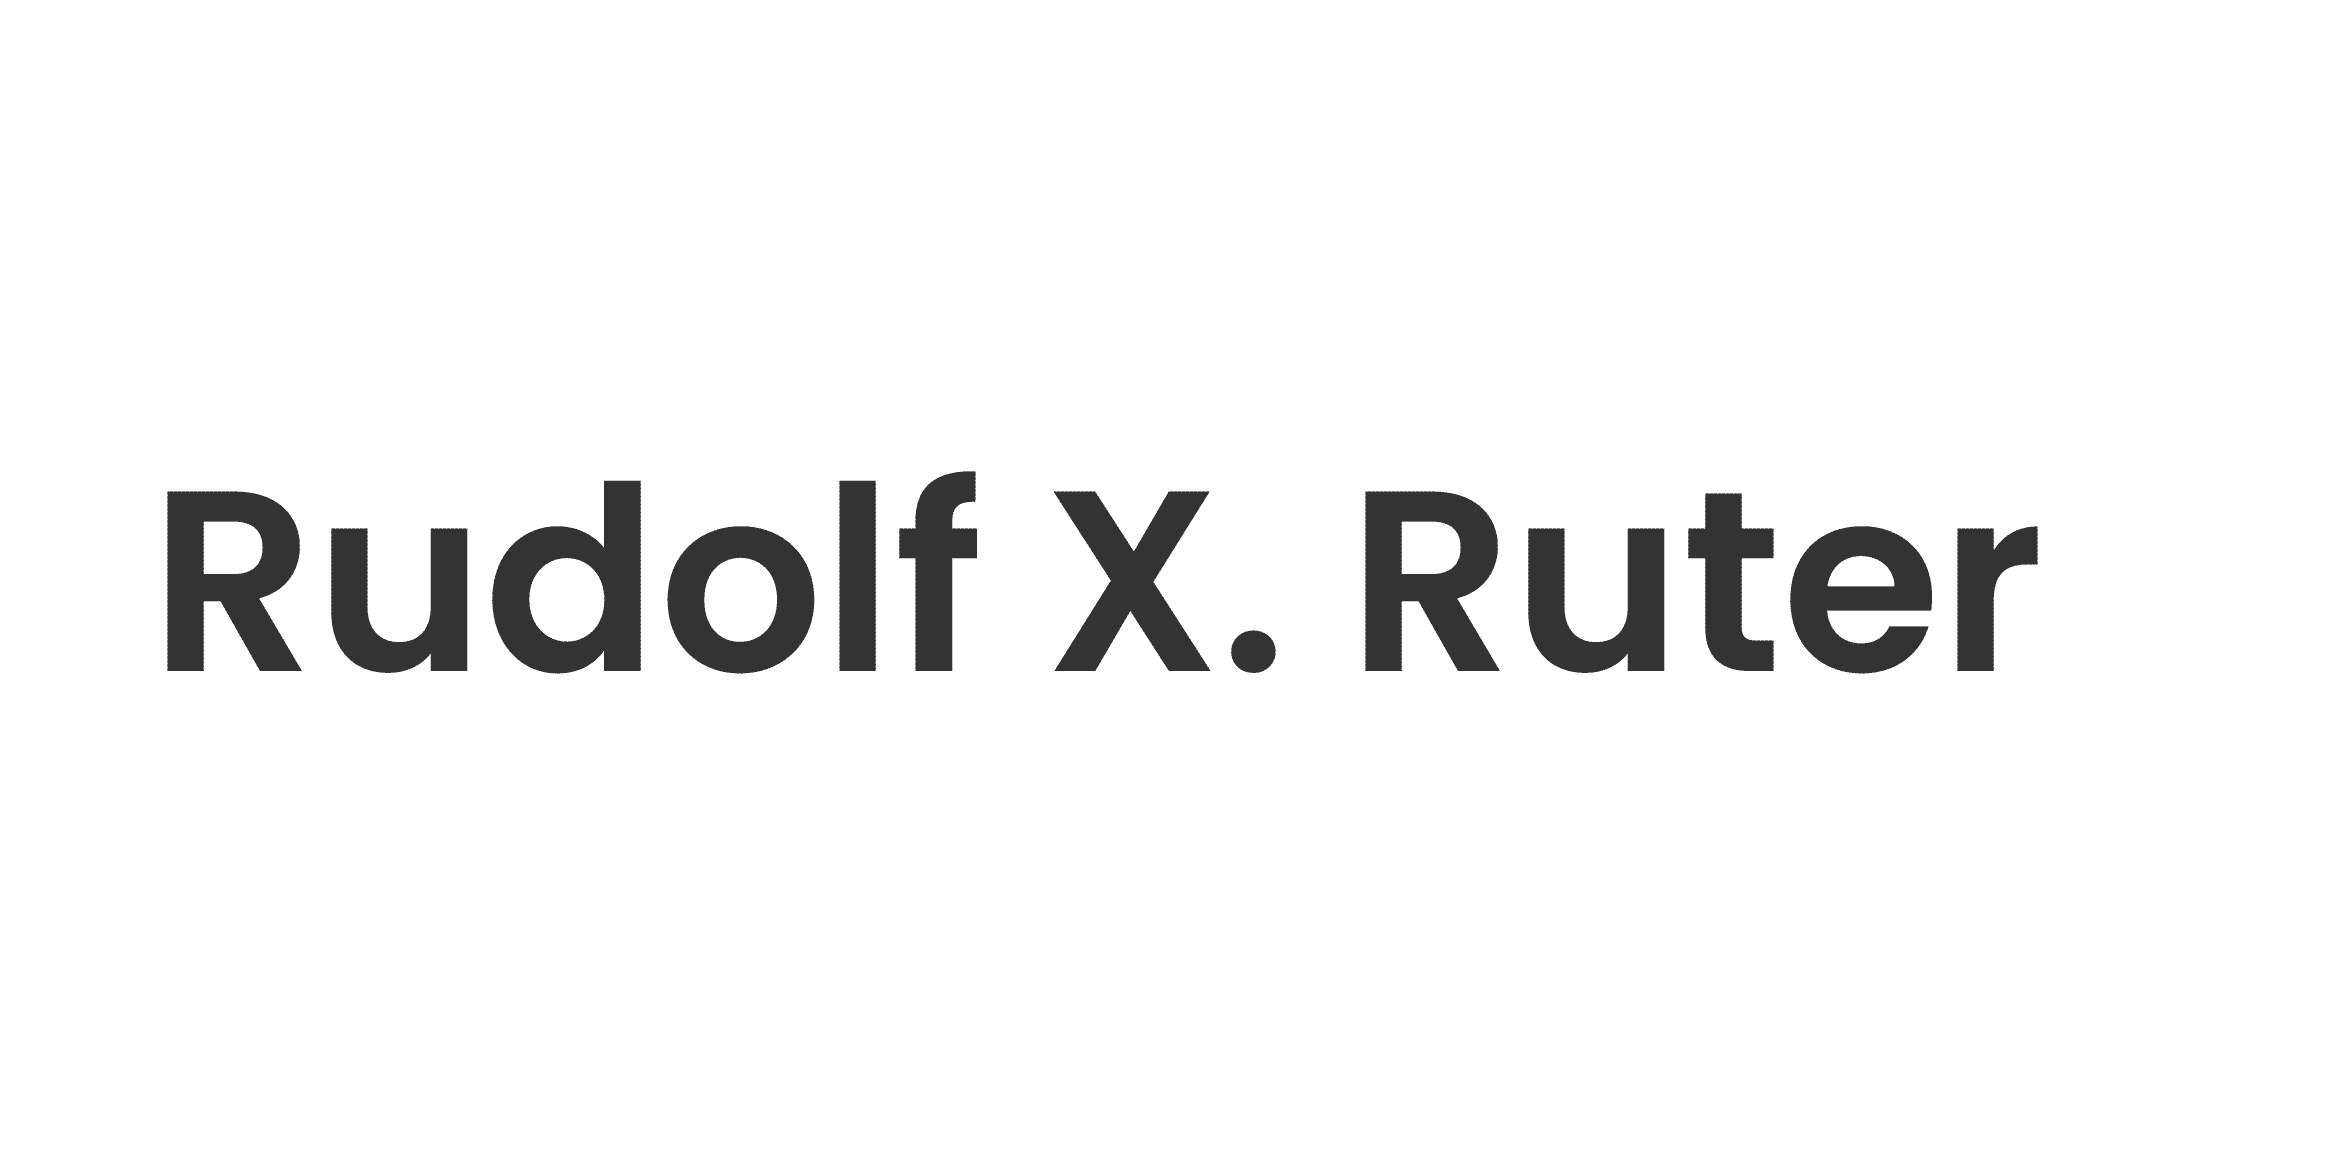 Rudolf X. Ruter